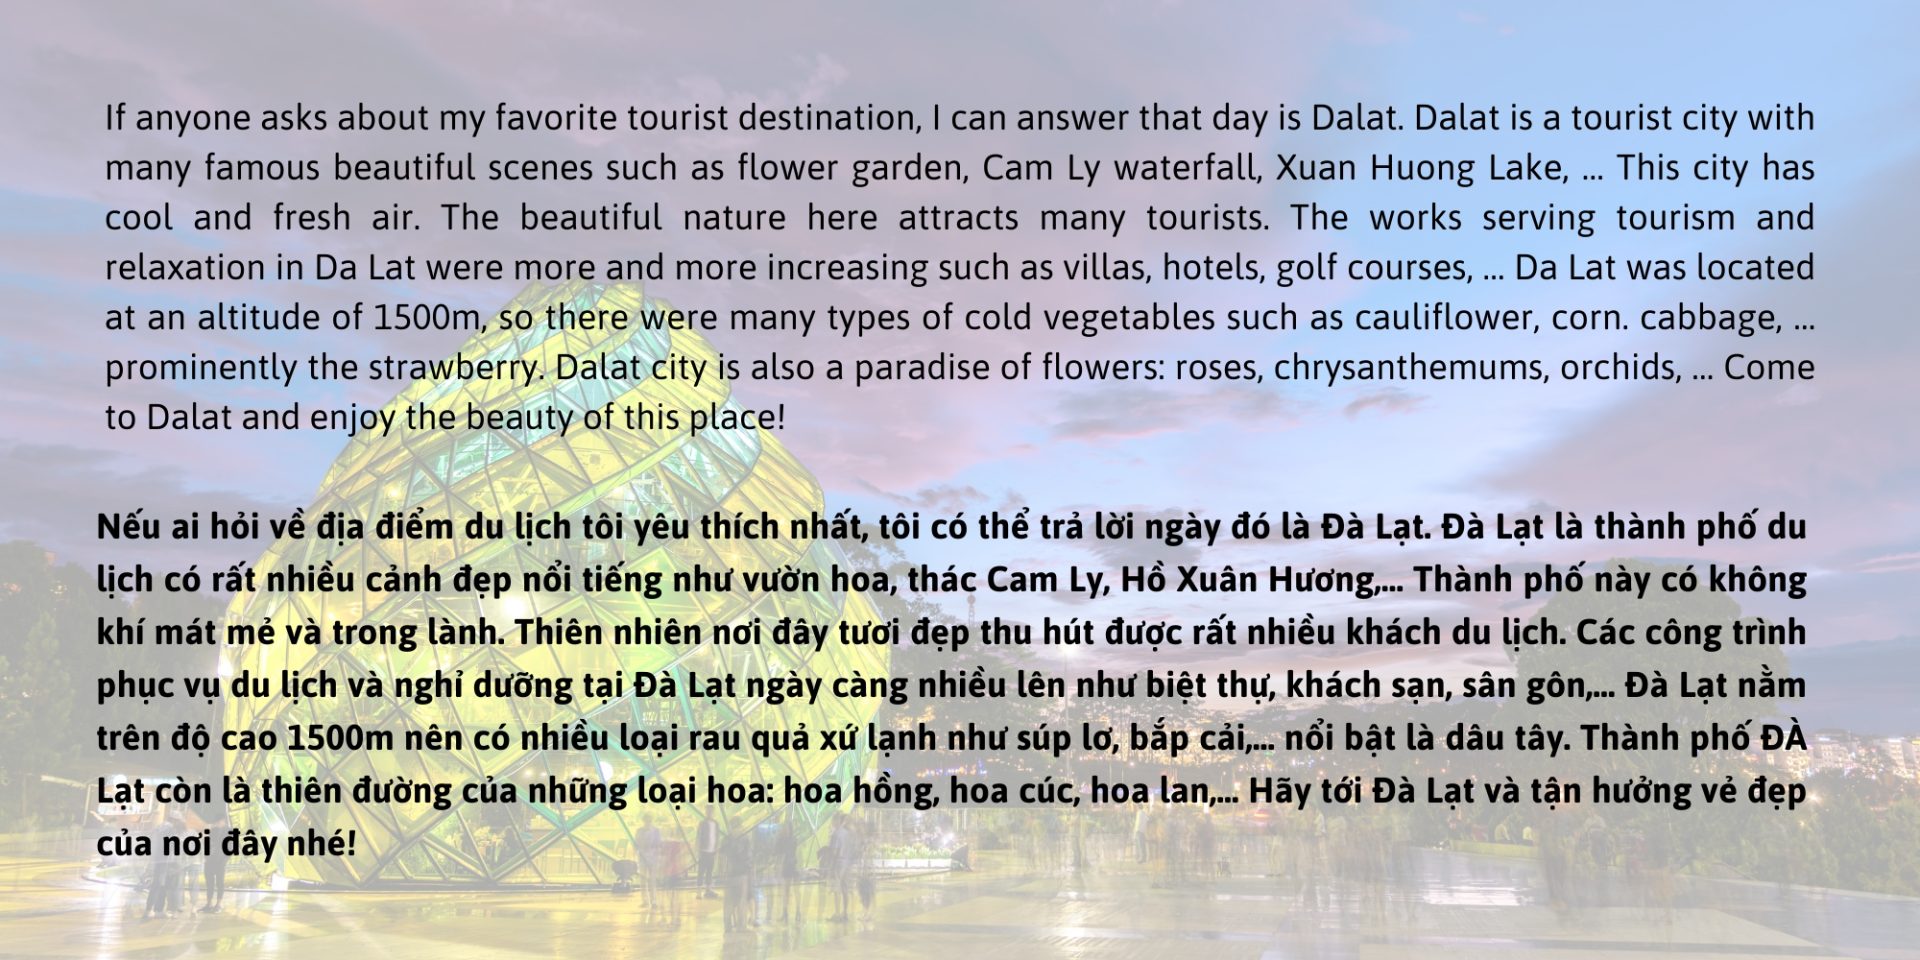 Bài viết bằng tiếng Anh với điểm đến thành phố Đà Lạt